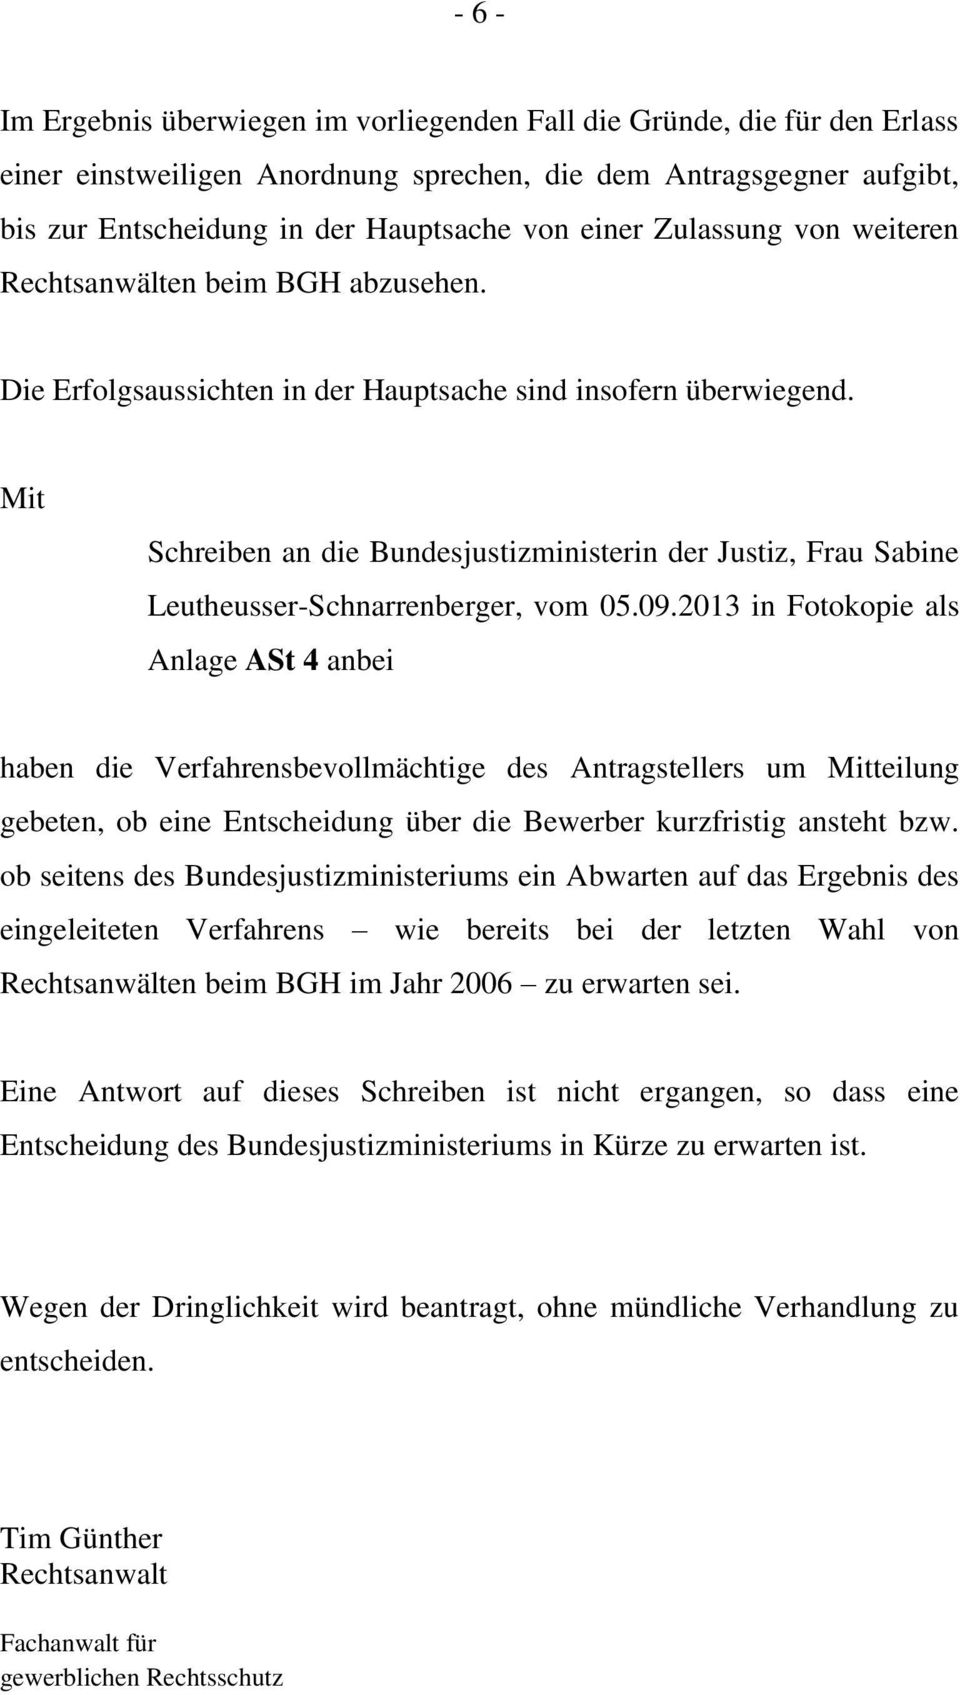 Mit Schreiben an die Bundesjustizministerin der Justiz, Frau Sabine Leutheusser-Schnarrenberger, vom 05.09.